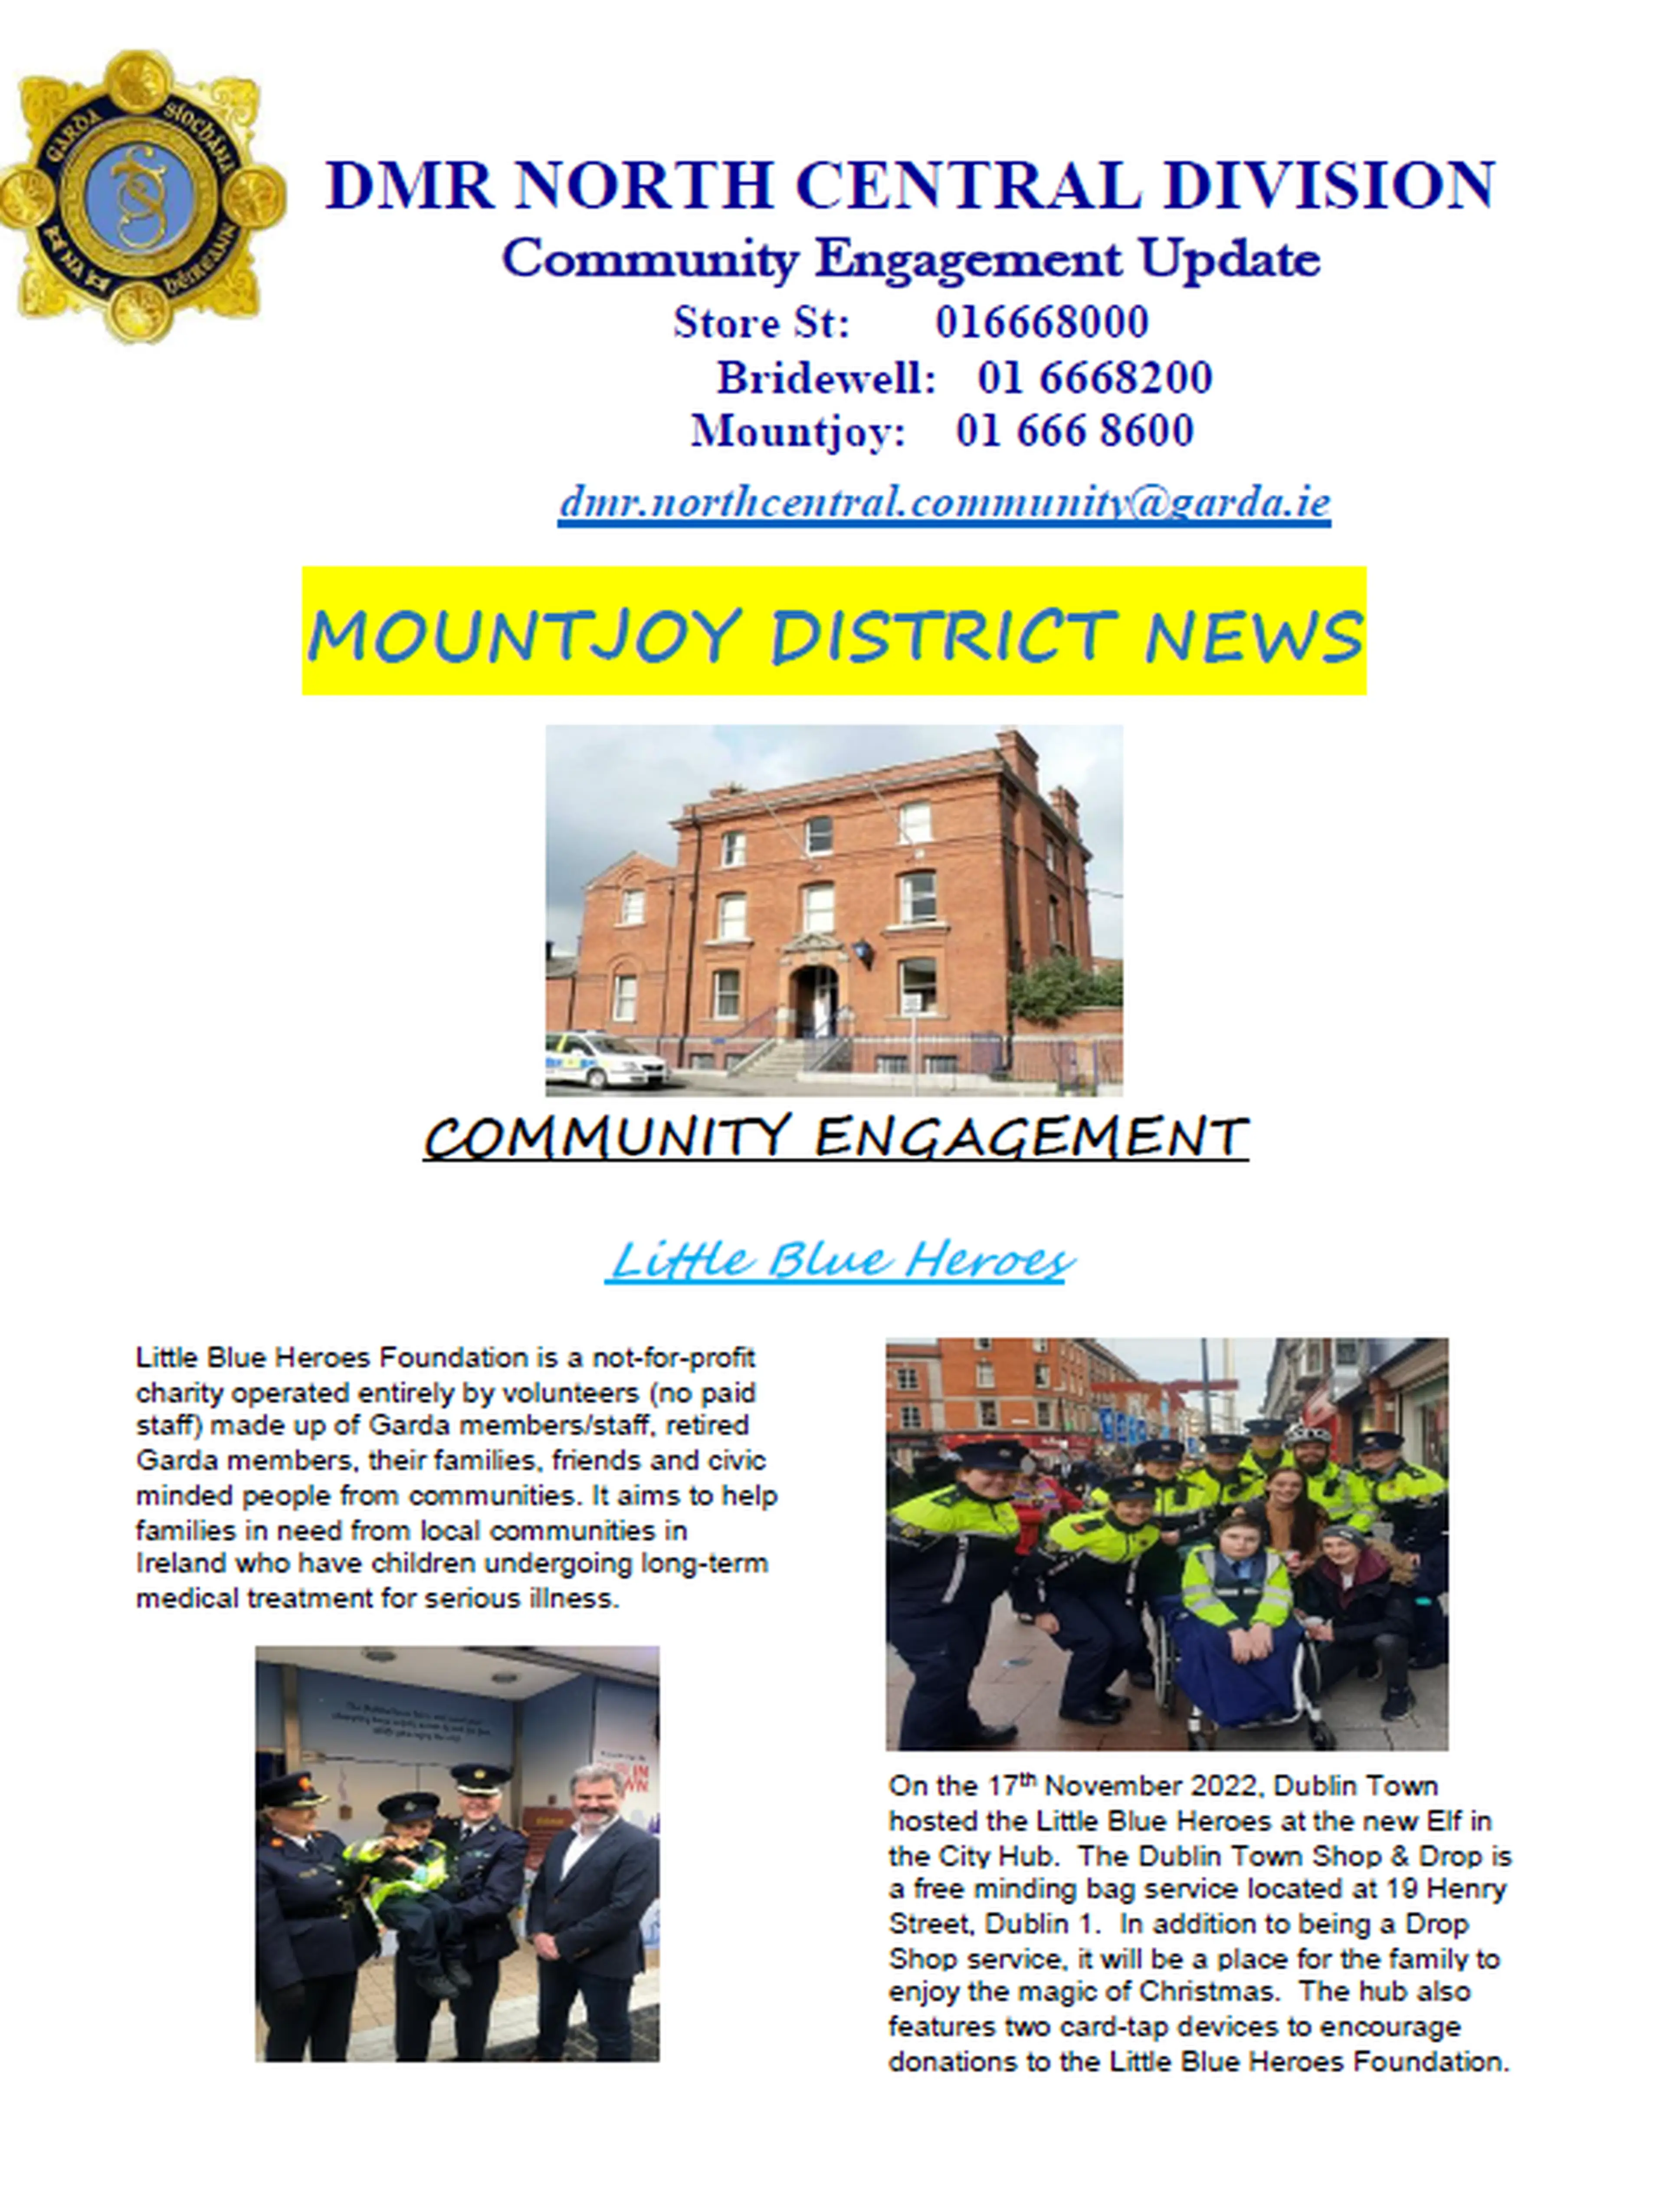 Mountjoy Community Engagement update Image